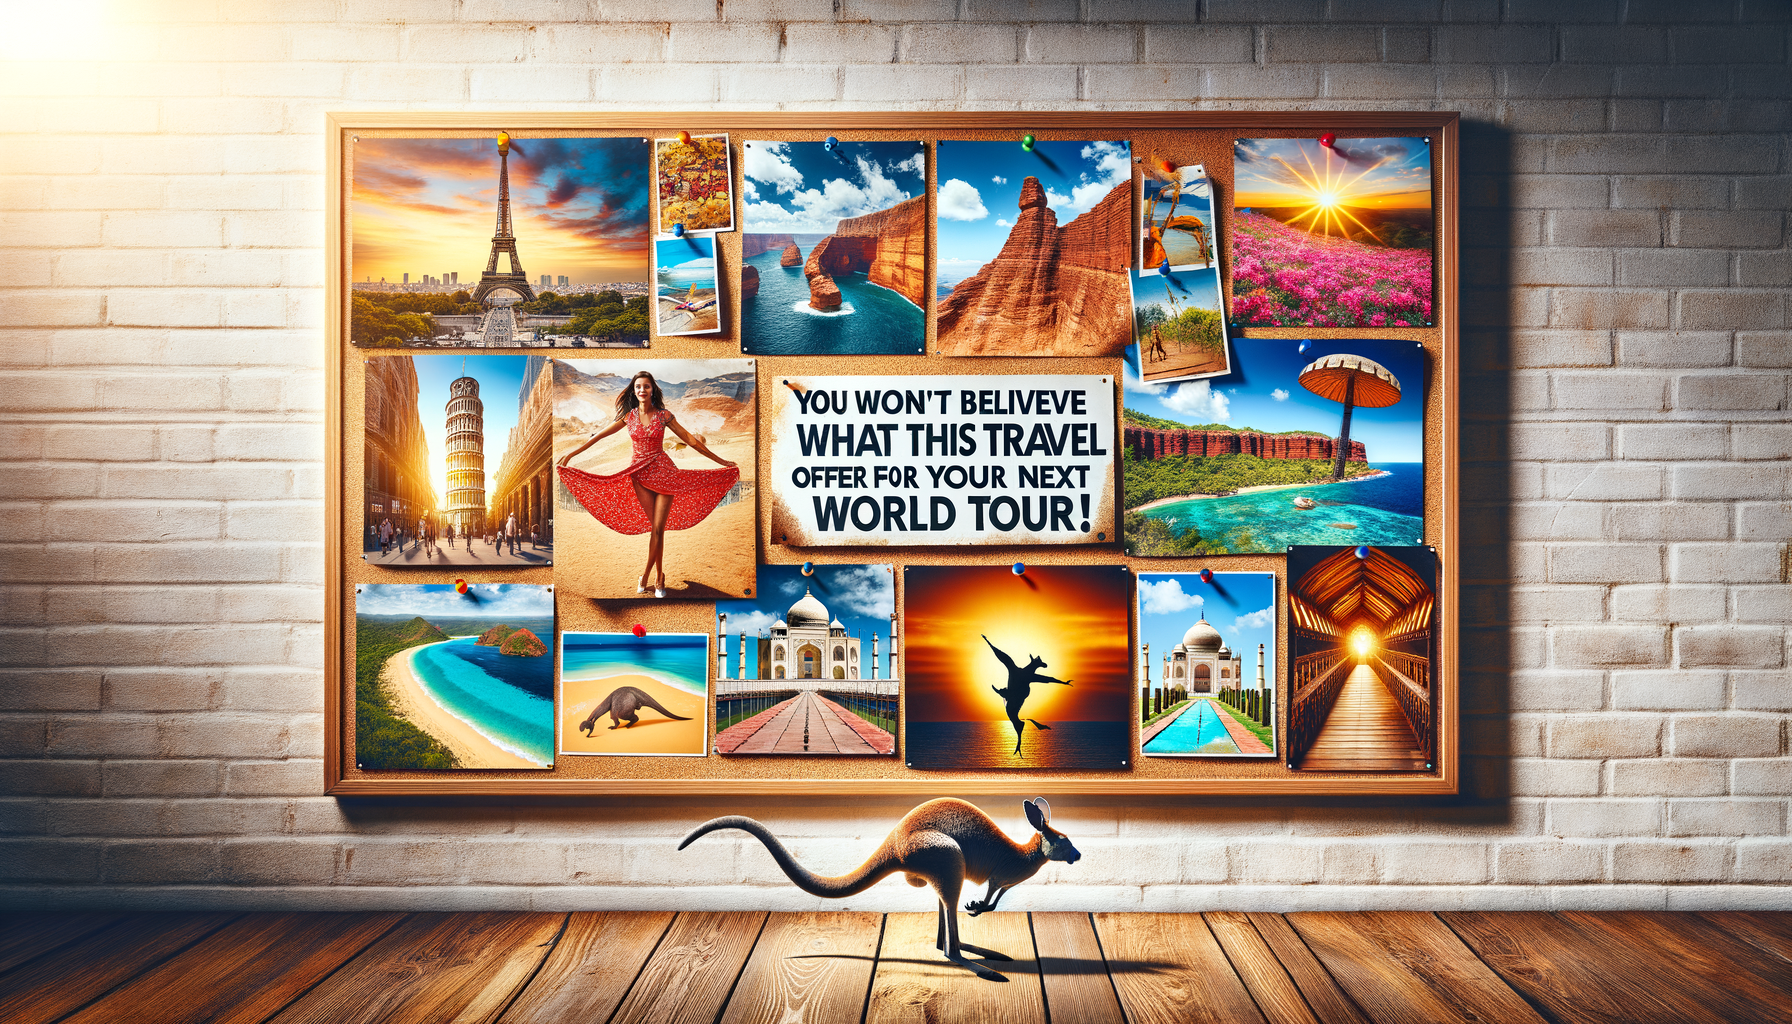 Vous ne devinerez jamais ce que cette agence de voyage propose pour votre prochain tour du monde !